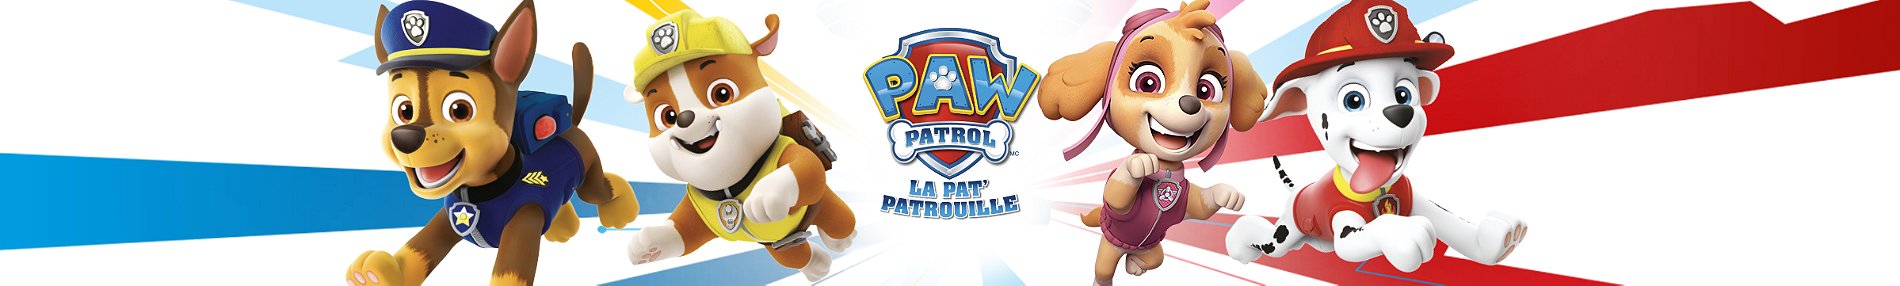 LA PAT' PATROUILLE LE FILM - PELUCHE GUND 15 CM PAW PATROL - Peluche Chiot  Pat' Patrouille Taille